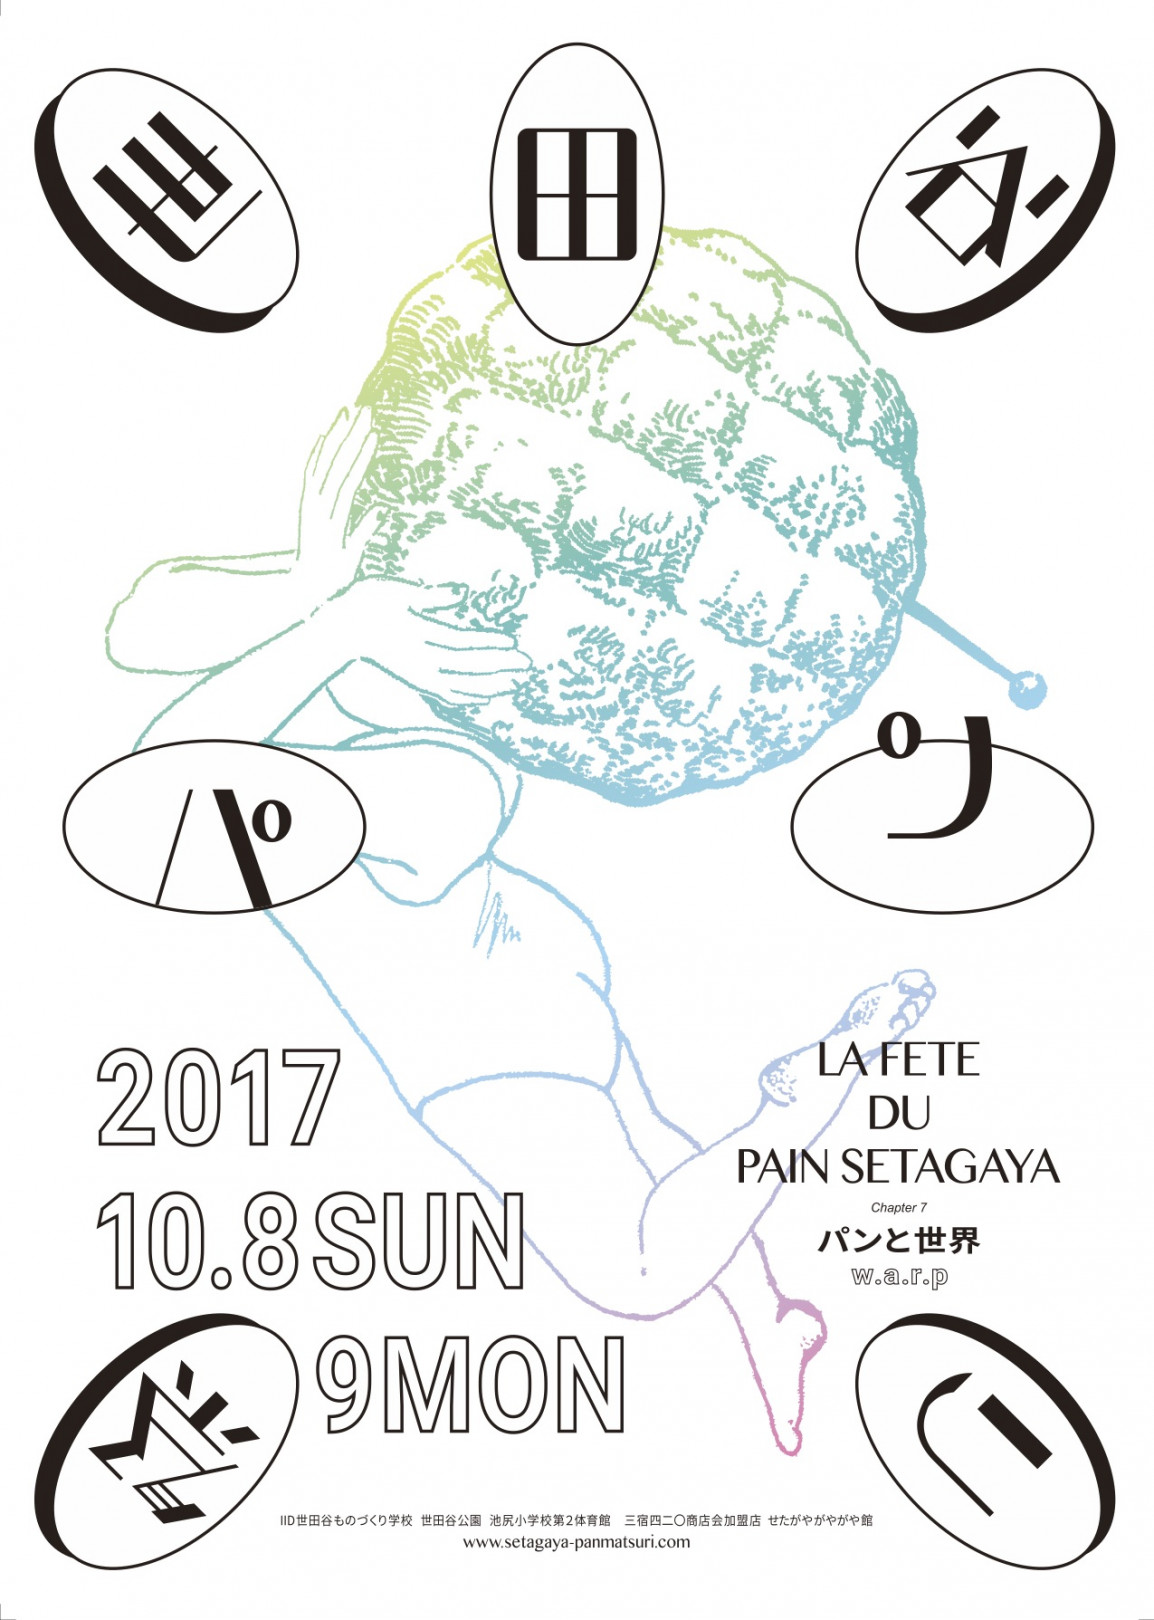 「世田谷パン祭り2017」ポスター